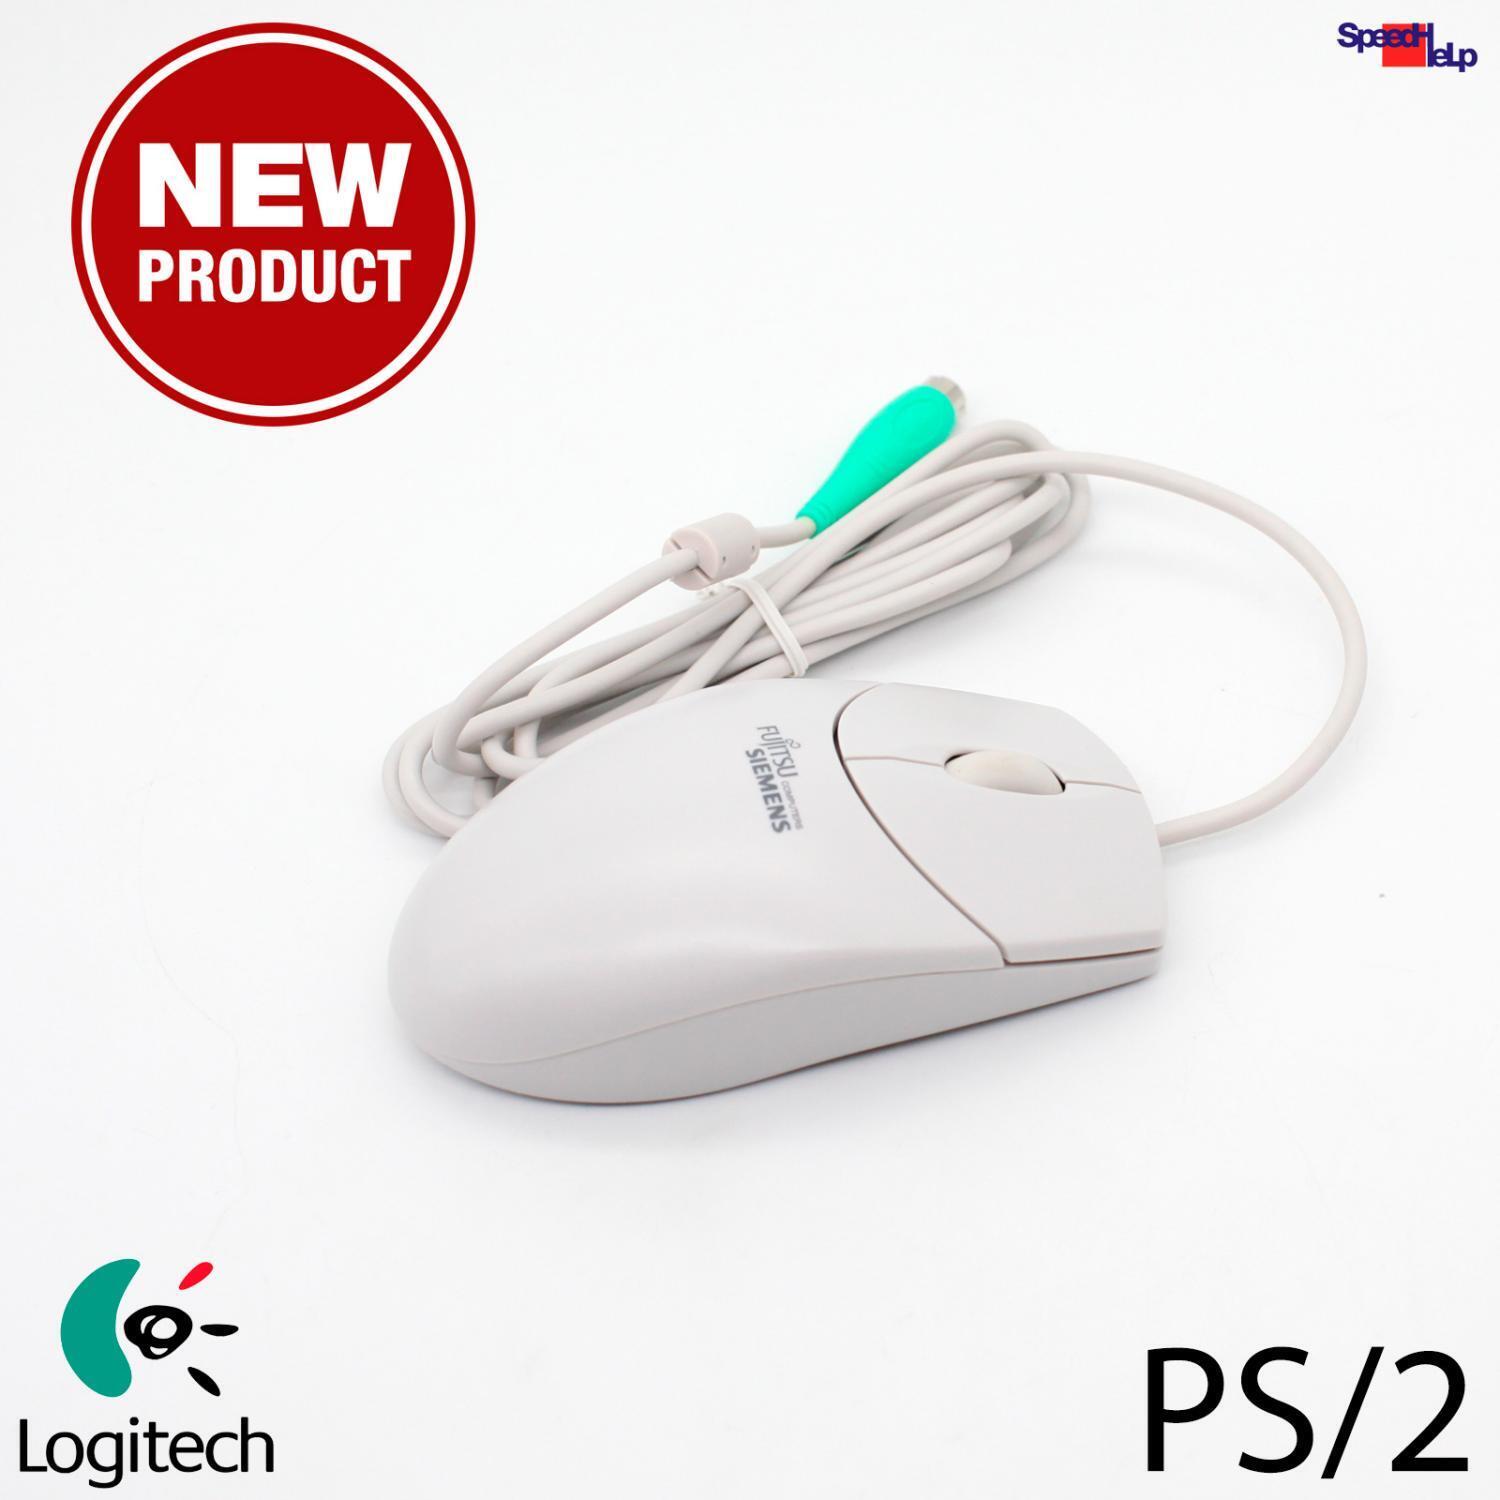 New Logitech M-S69 Mouse Ps/2 Connectors Port Retro Vintage Pentium 1 2 3 4